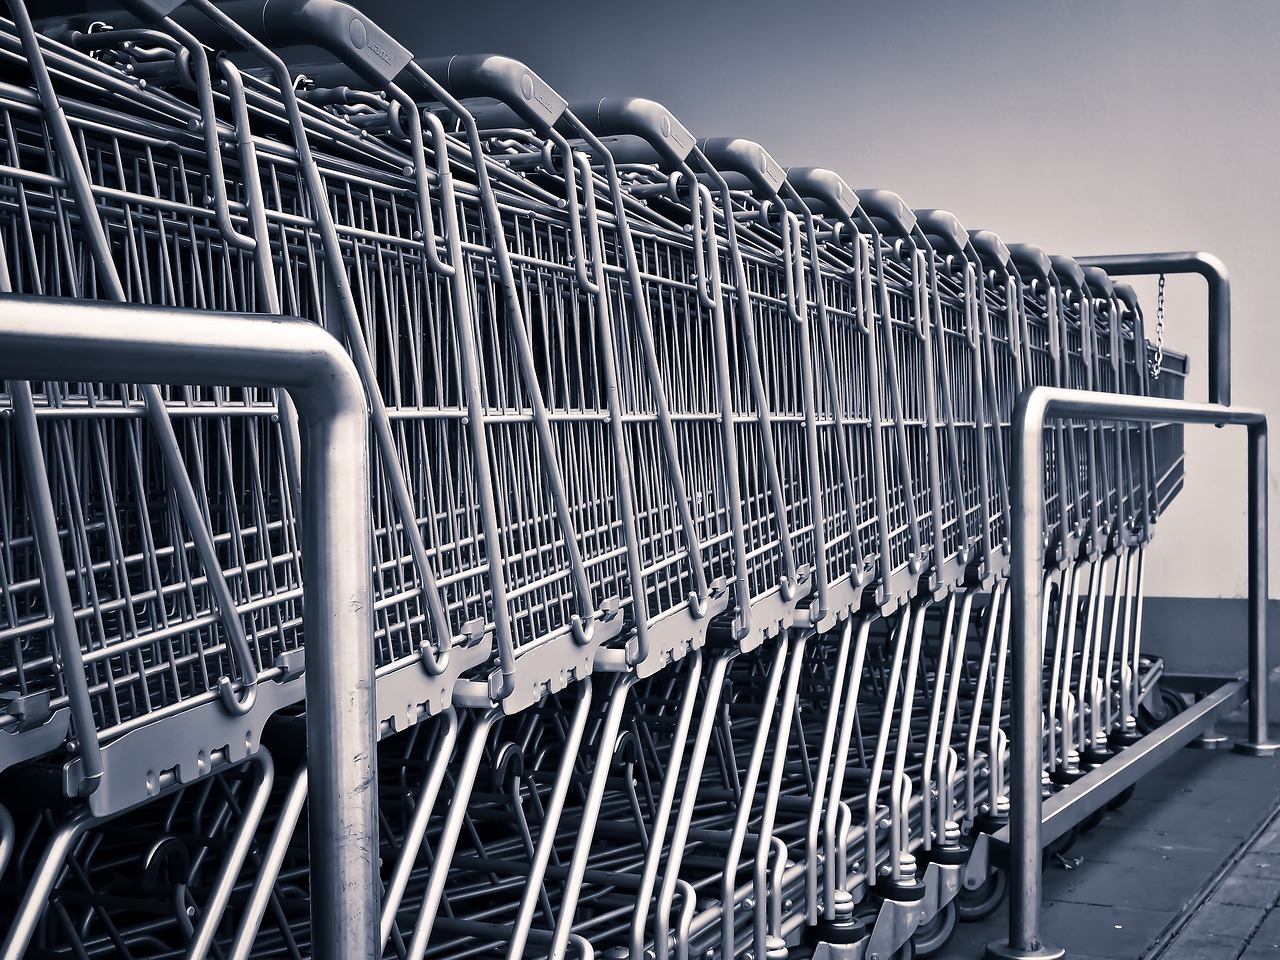 Carrefour rachète Cora et Match : quelles conséquences pour les consommateurs ?